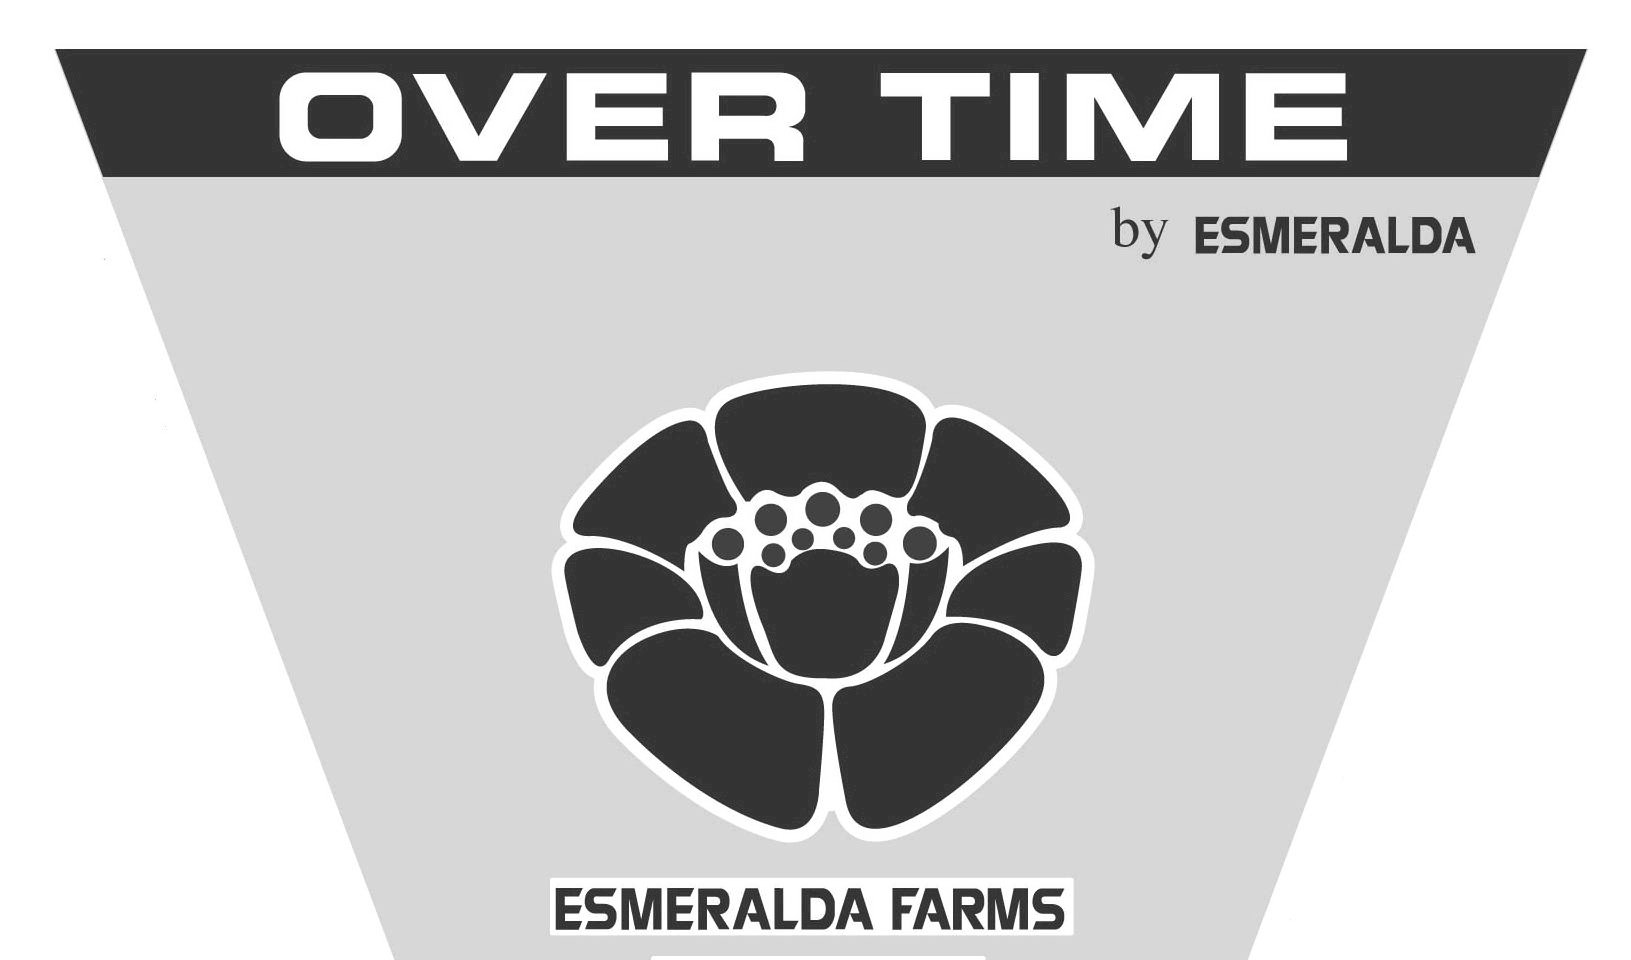  OVER TIME BY ESMERALDA ESMERALDA FARMS